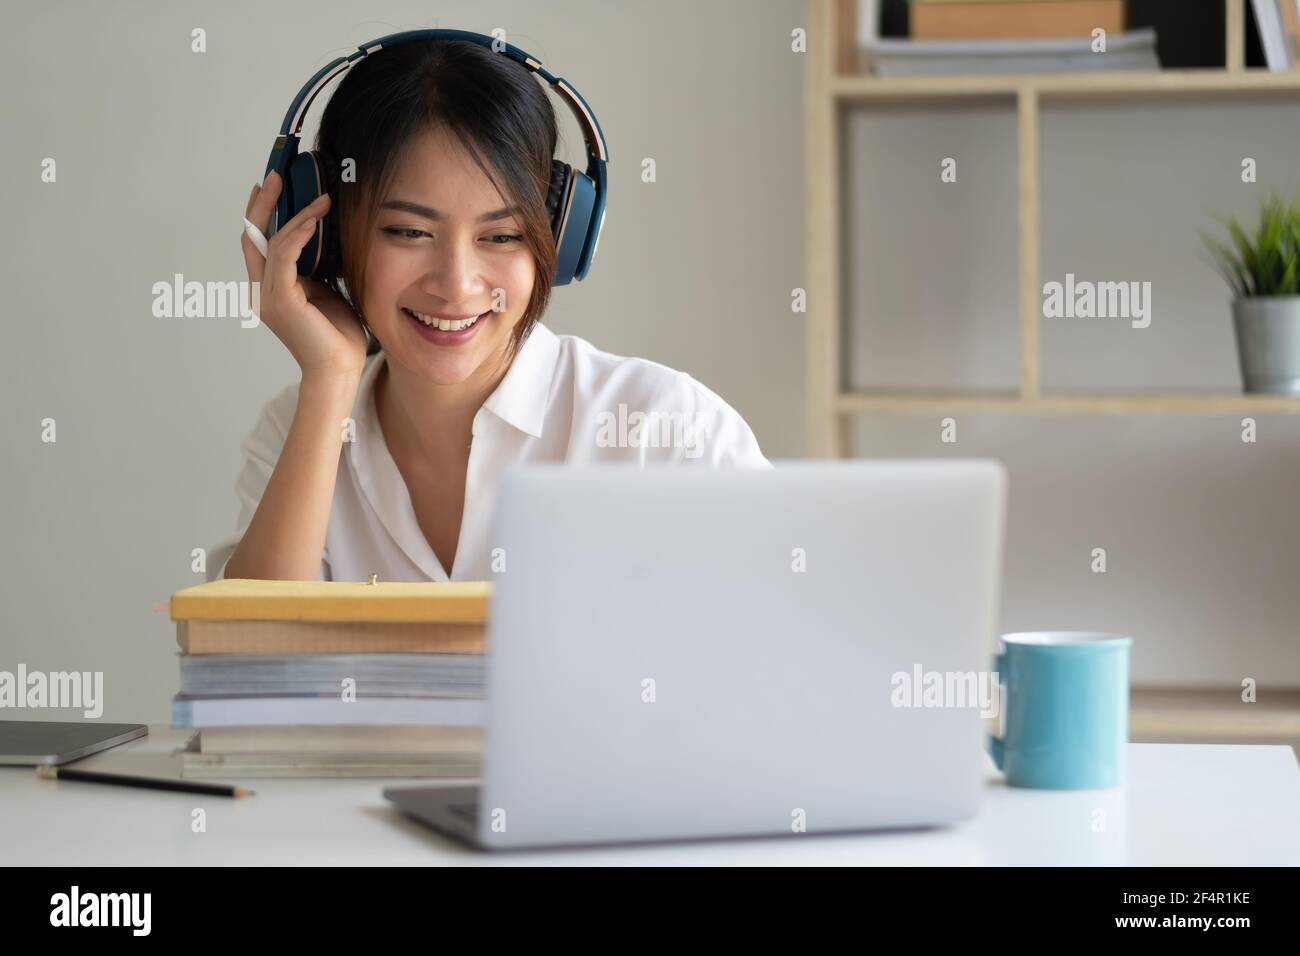 Donna asiatica che indossa le cuffie studiare online guardare il webinar podcast sul laptop ascoltare apprendimento corso di formazione conference call, elearning Foto Stock